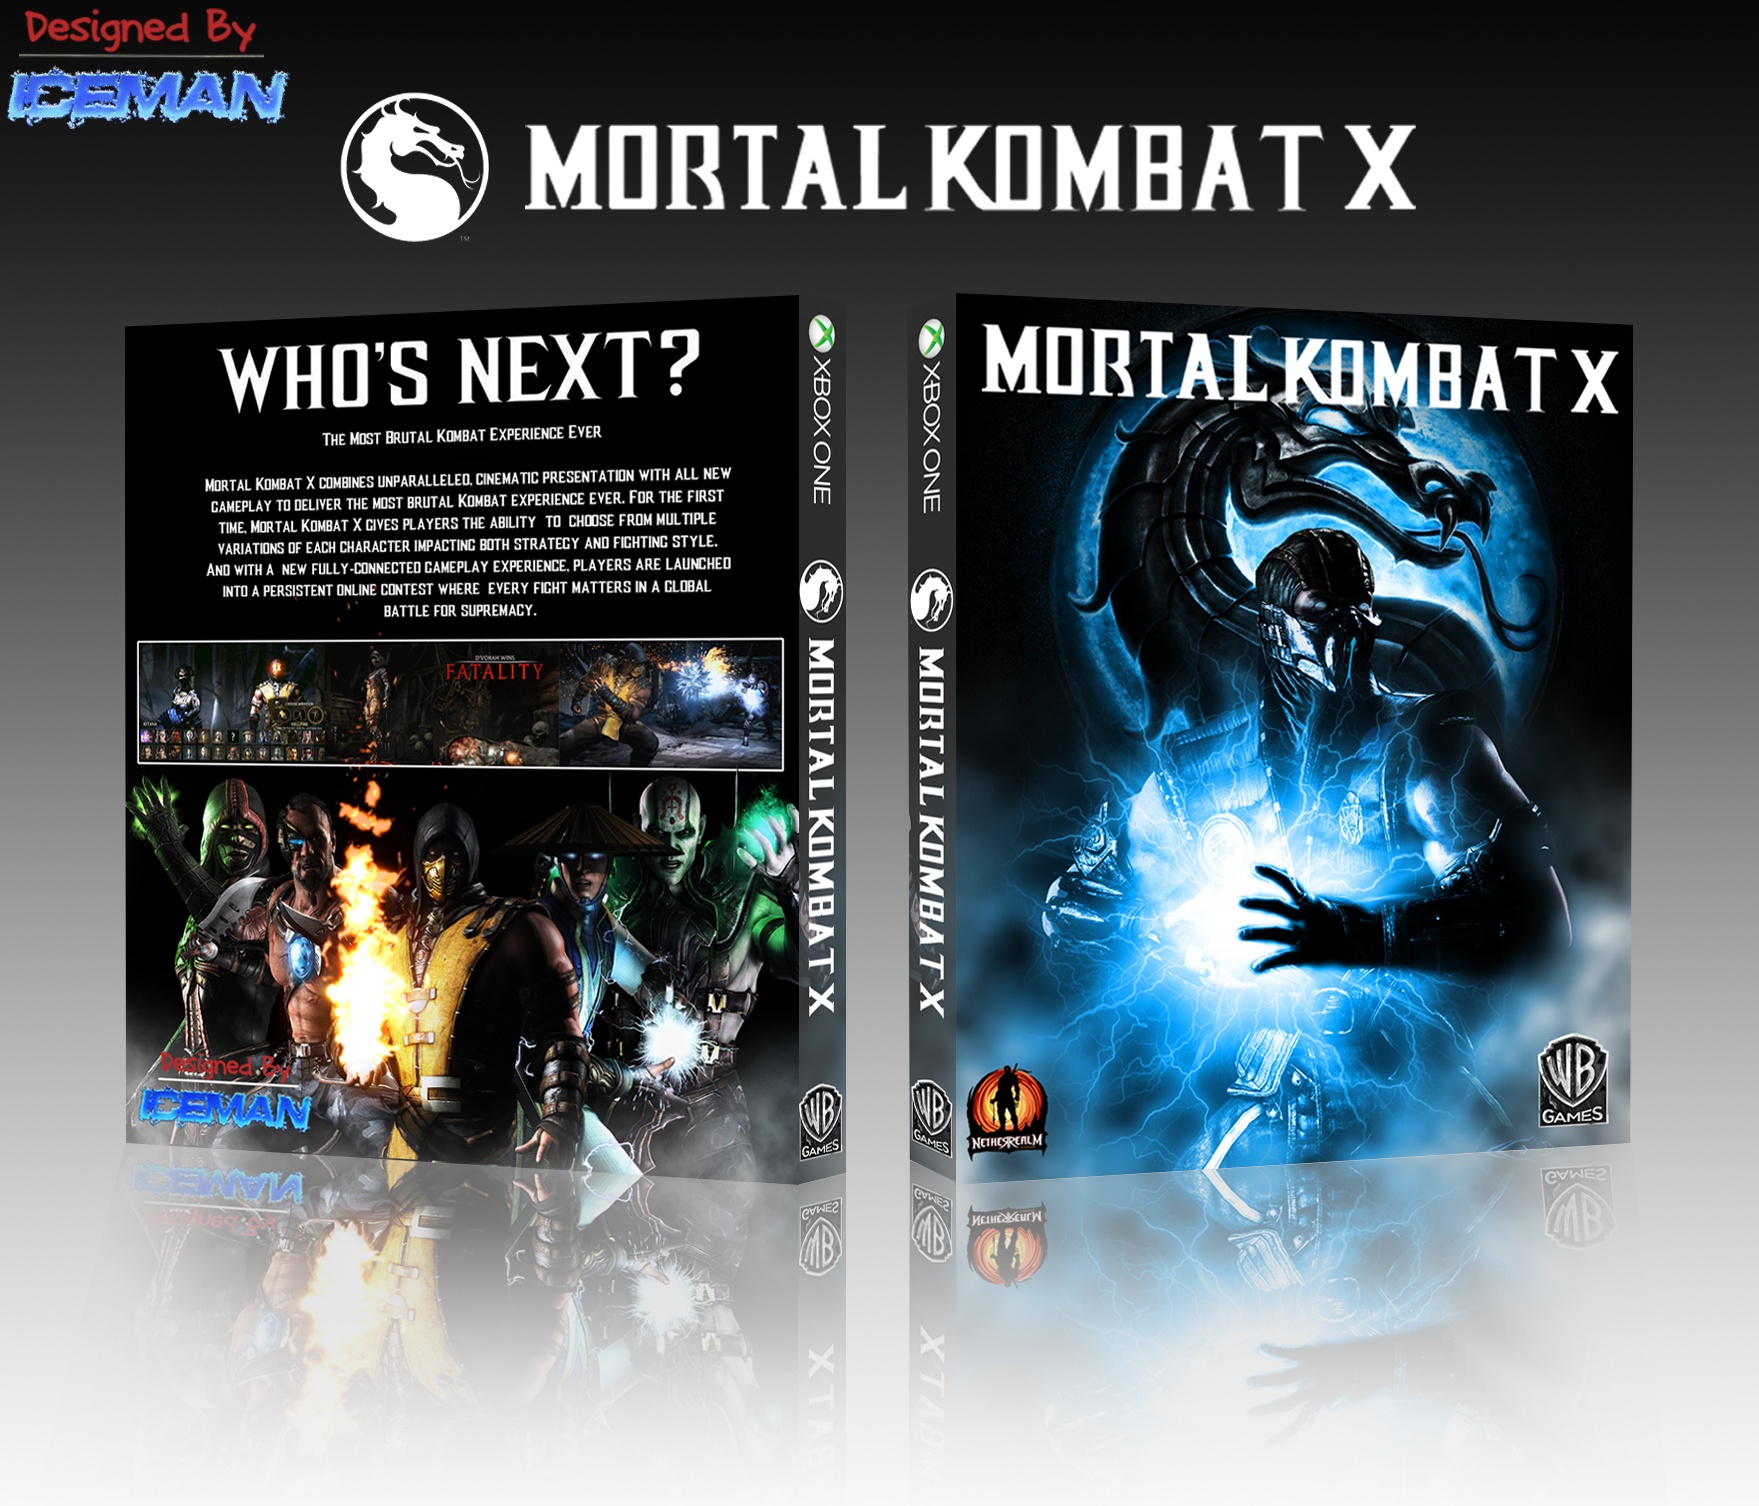 Мортал комбат игры xbox. Диск мортал комбат на Икс бокс 360. Диск мортал комбат XL на Xbox 360. Диск Xbox 360 Mortal Kombat 10. Mortal Kombat 9 диск Xbox 360.